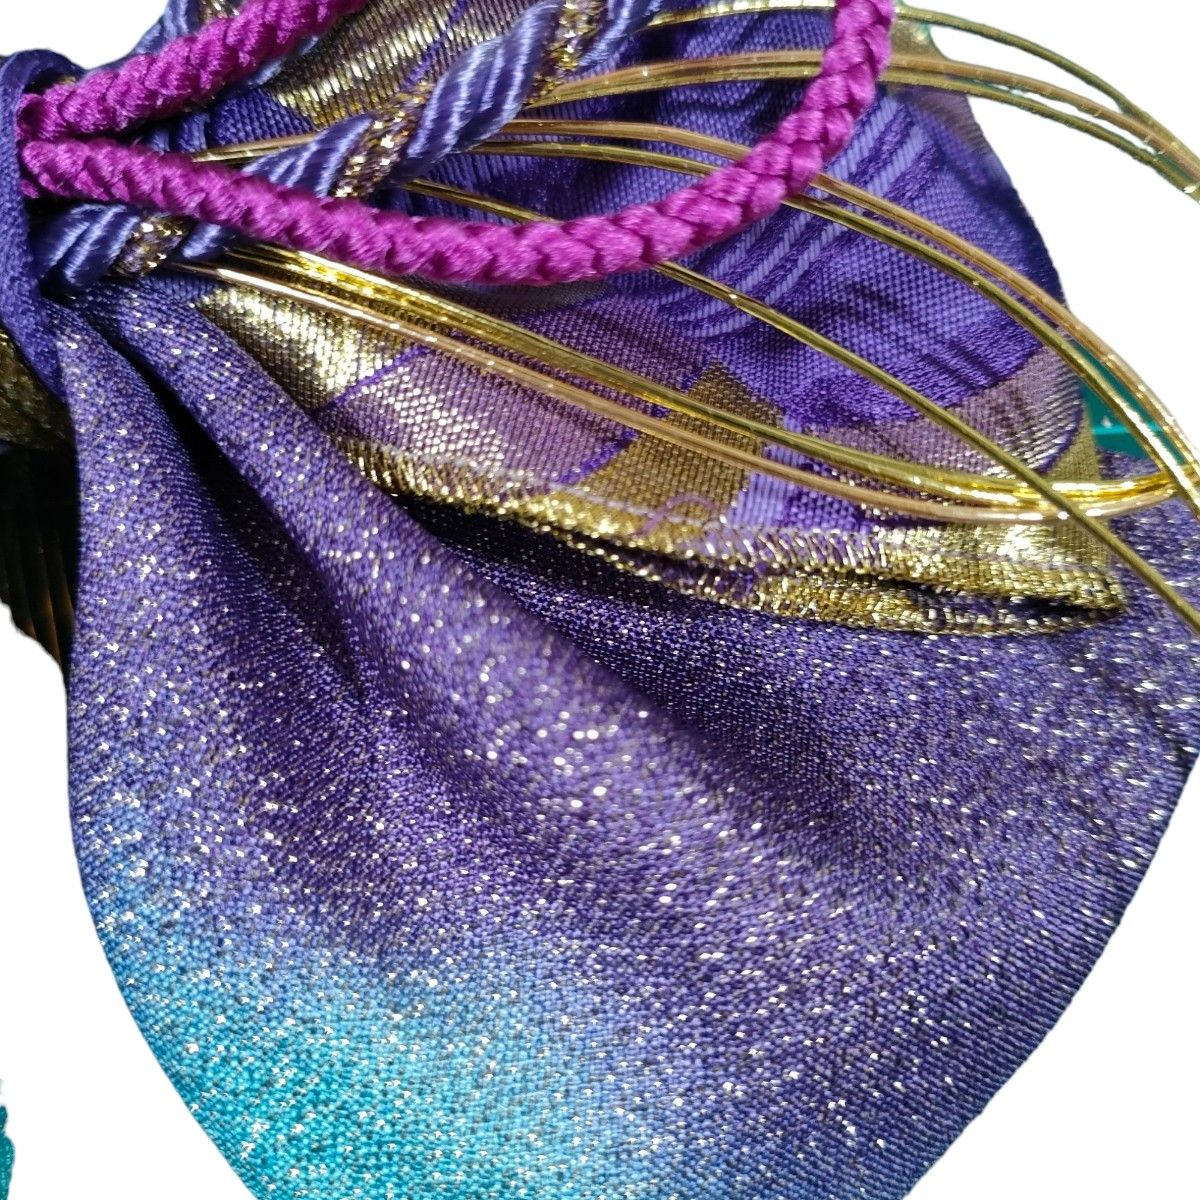 髪飾りコーム和風ヘアアクセサリー水引組紐紫水色金グラデーションラメ振袖袴着物和装